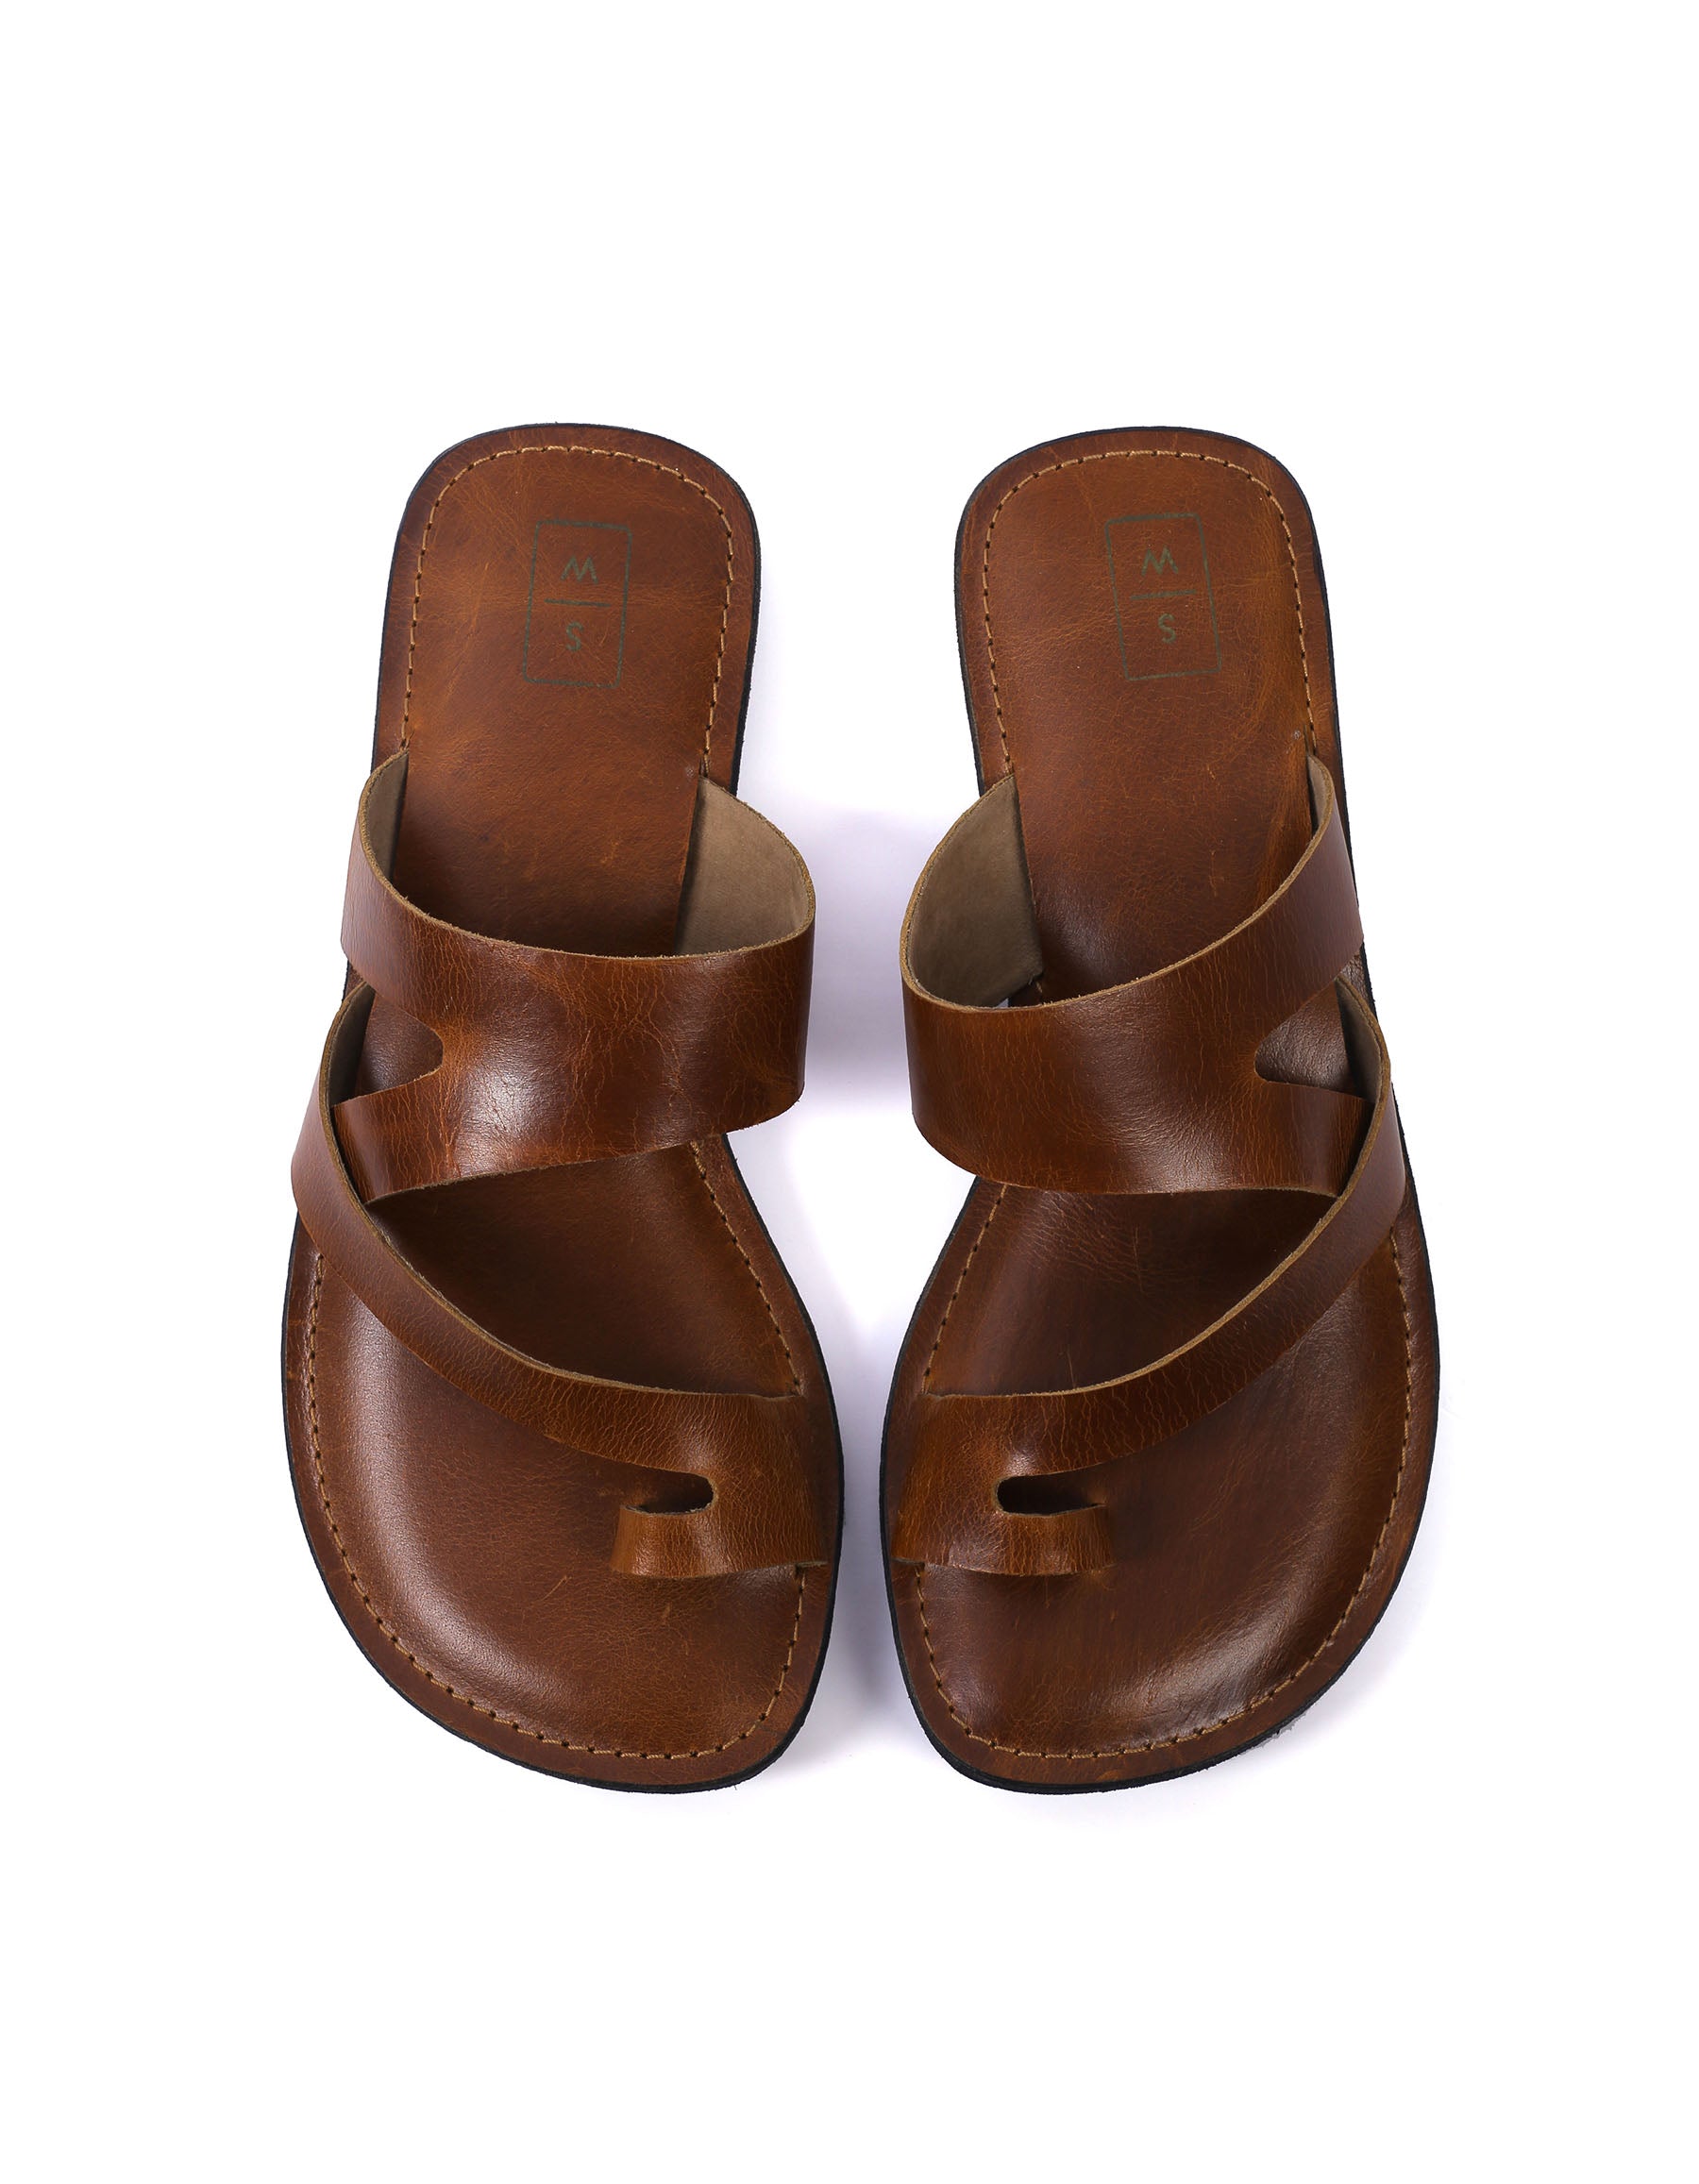 Carlos Antique Tan Leather Men's Sandals